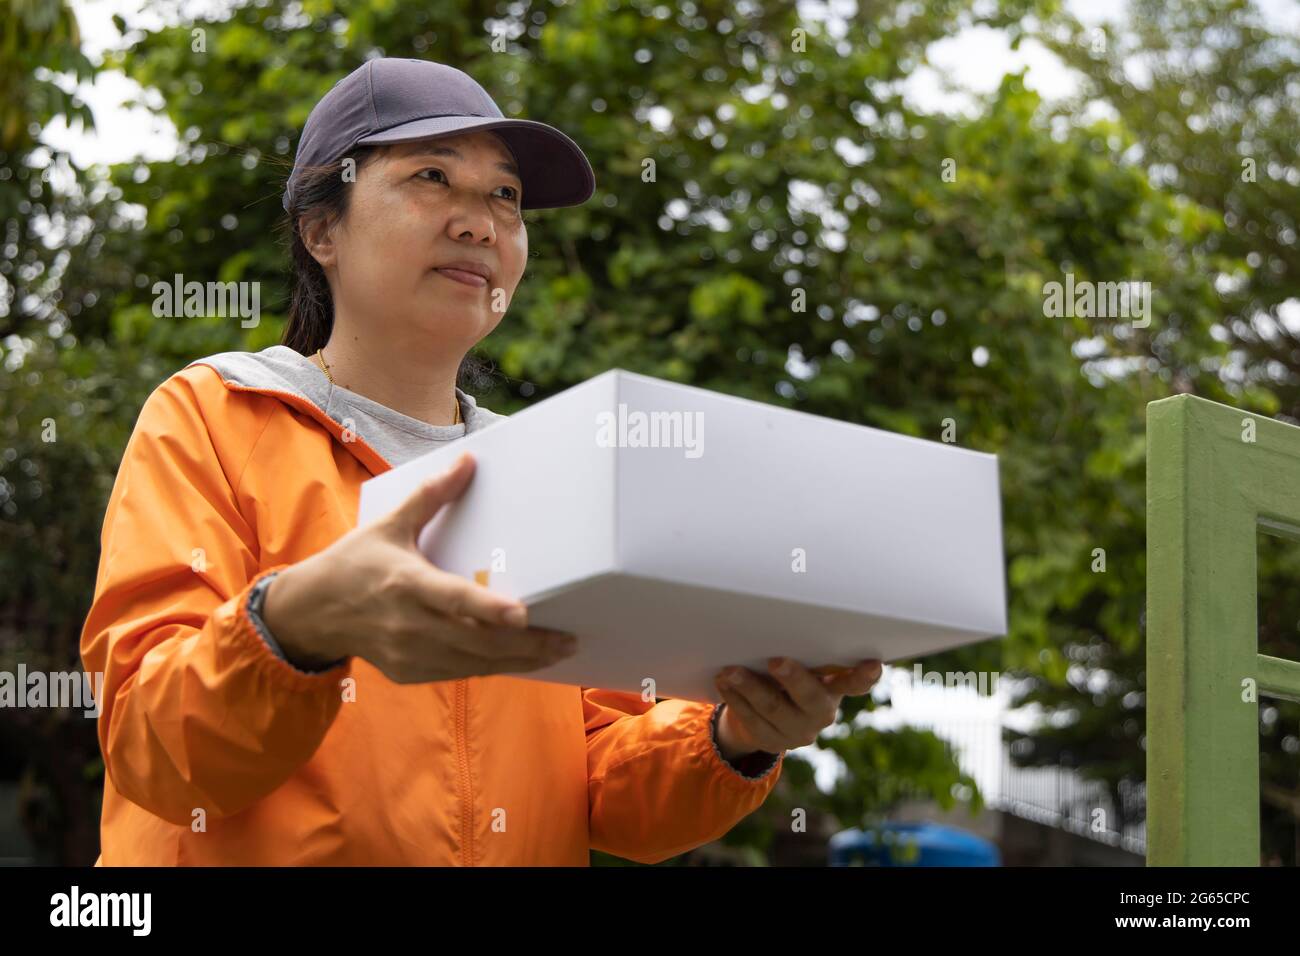 Una empleada que llevaba una bata naranja entregó un regalo en una caja blanca al frente de la casa. Foto de stock